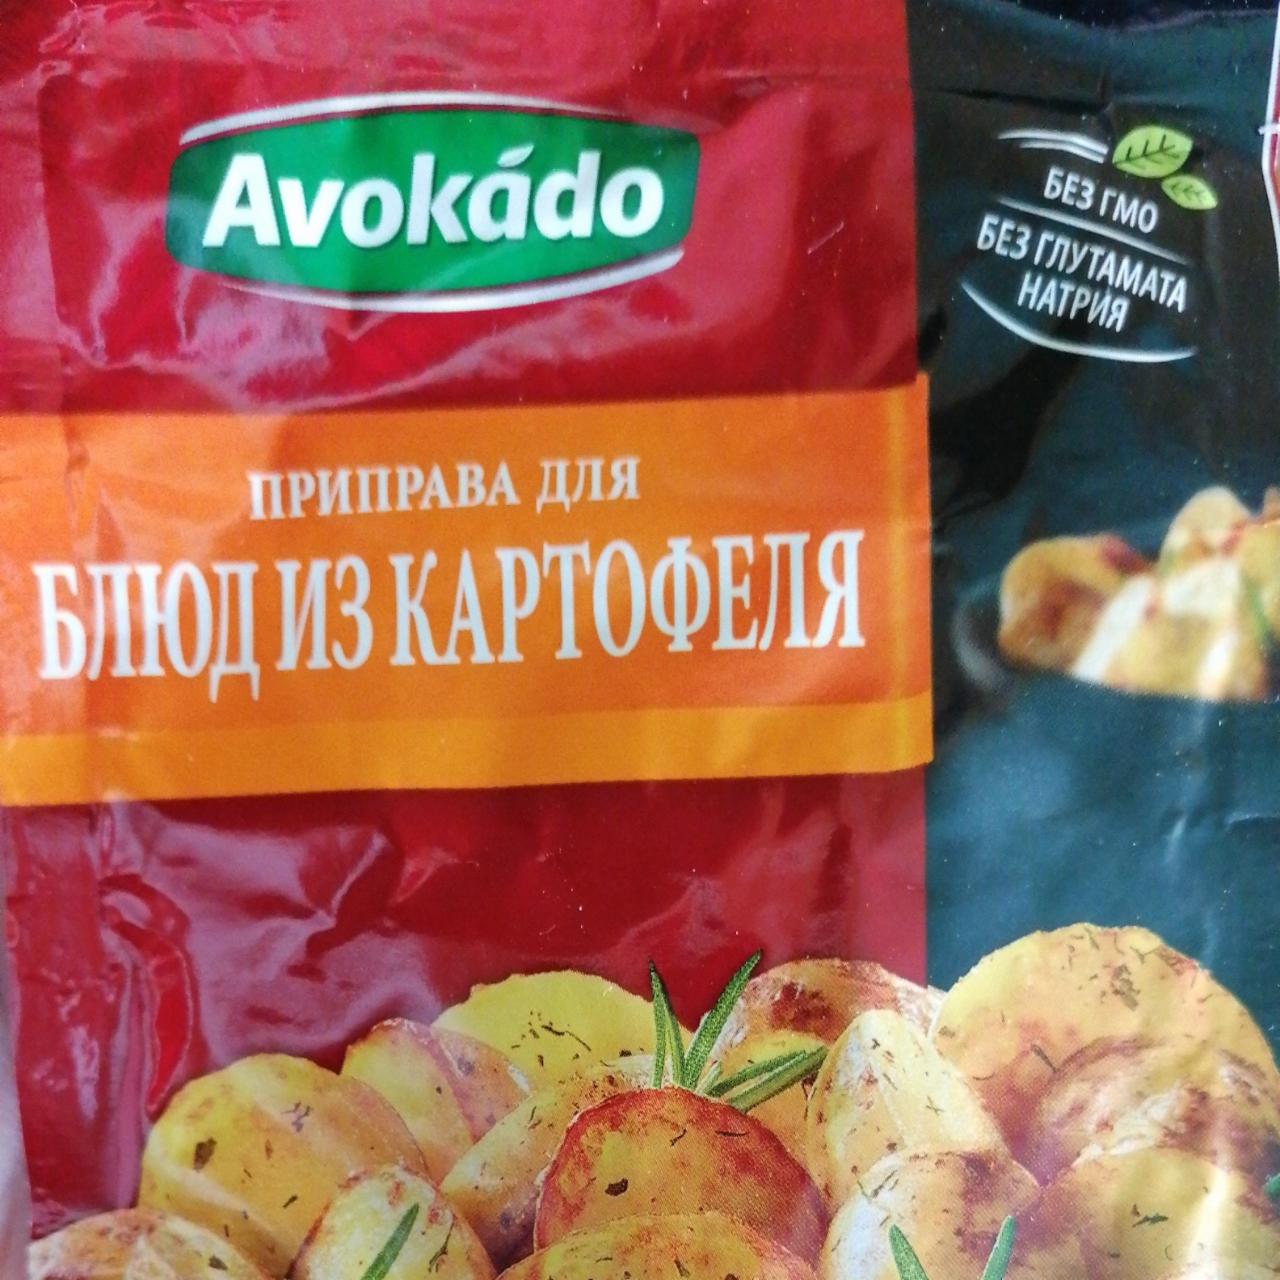 Фото - Приправа к картофелю Avokado